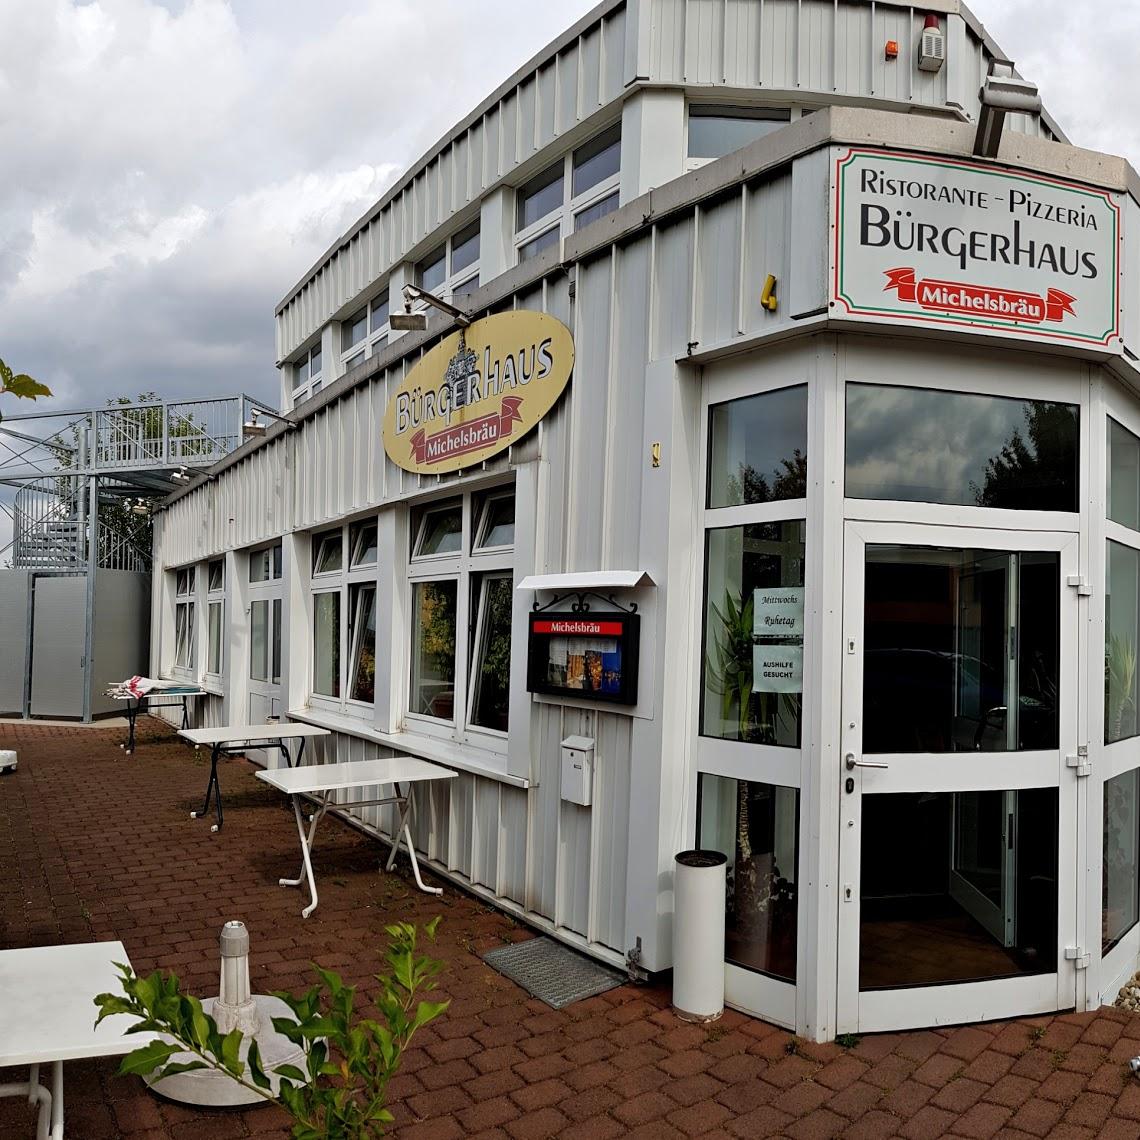 Restaurant "Bürgerhaus" in Babenhausen